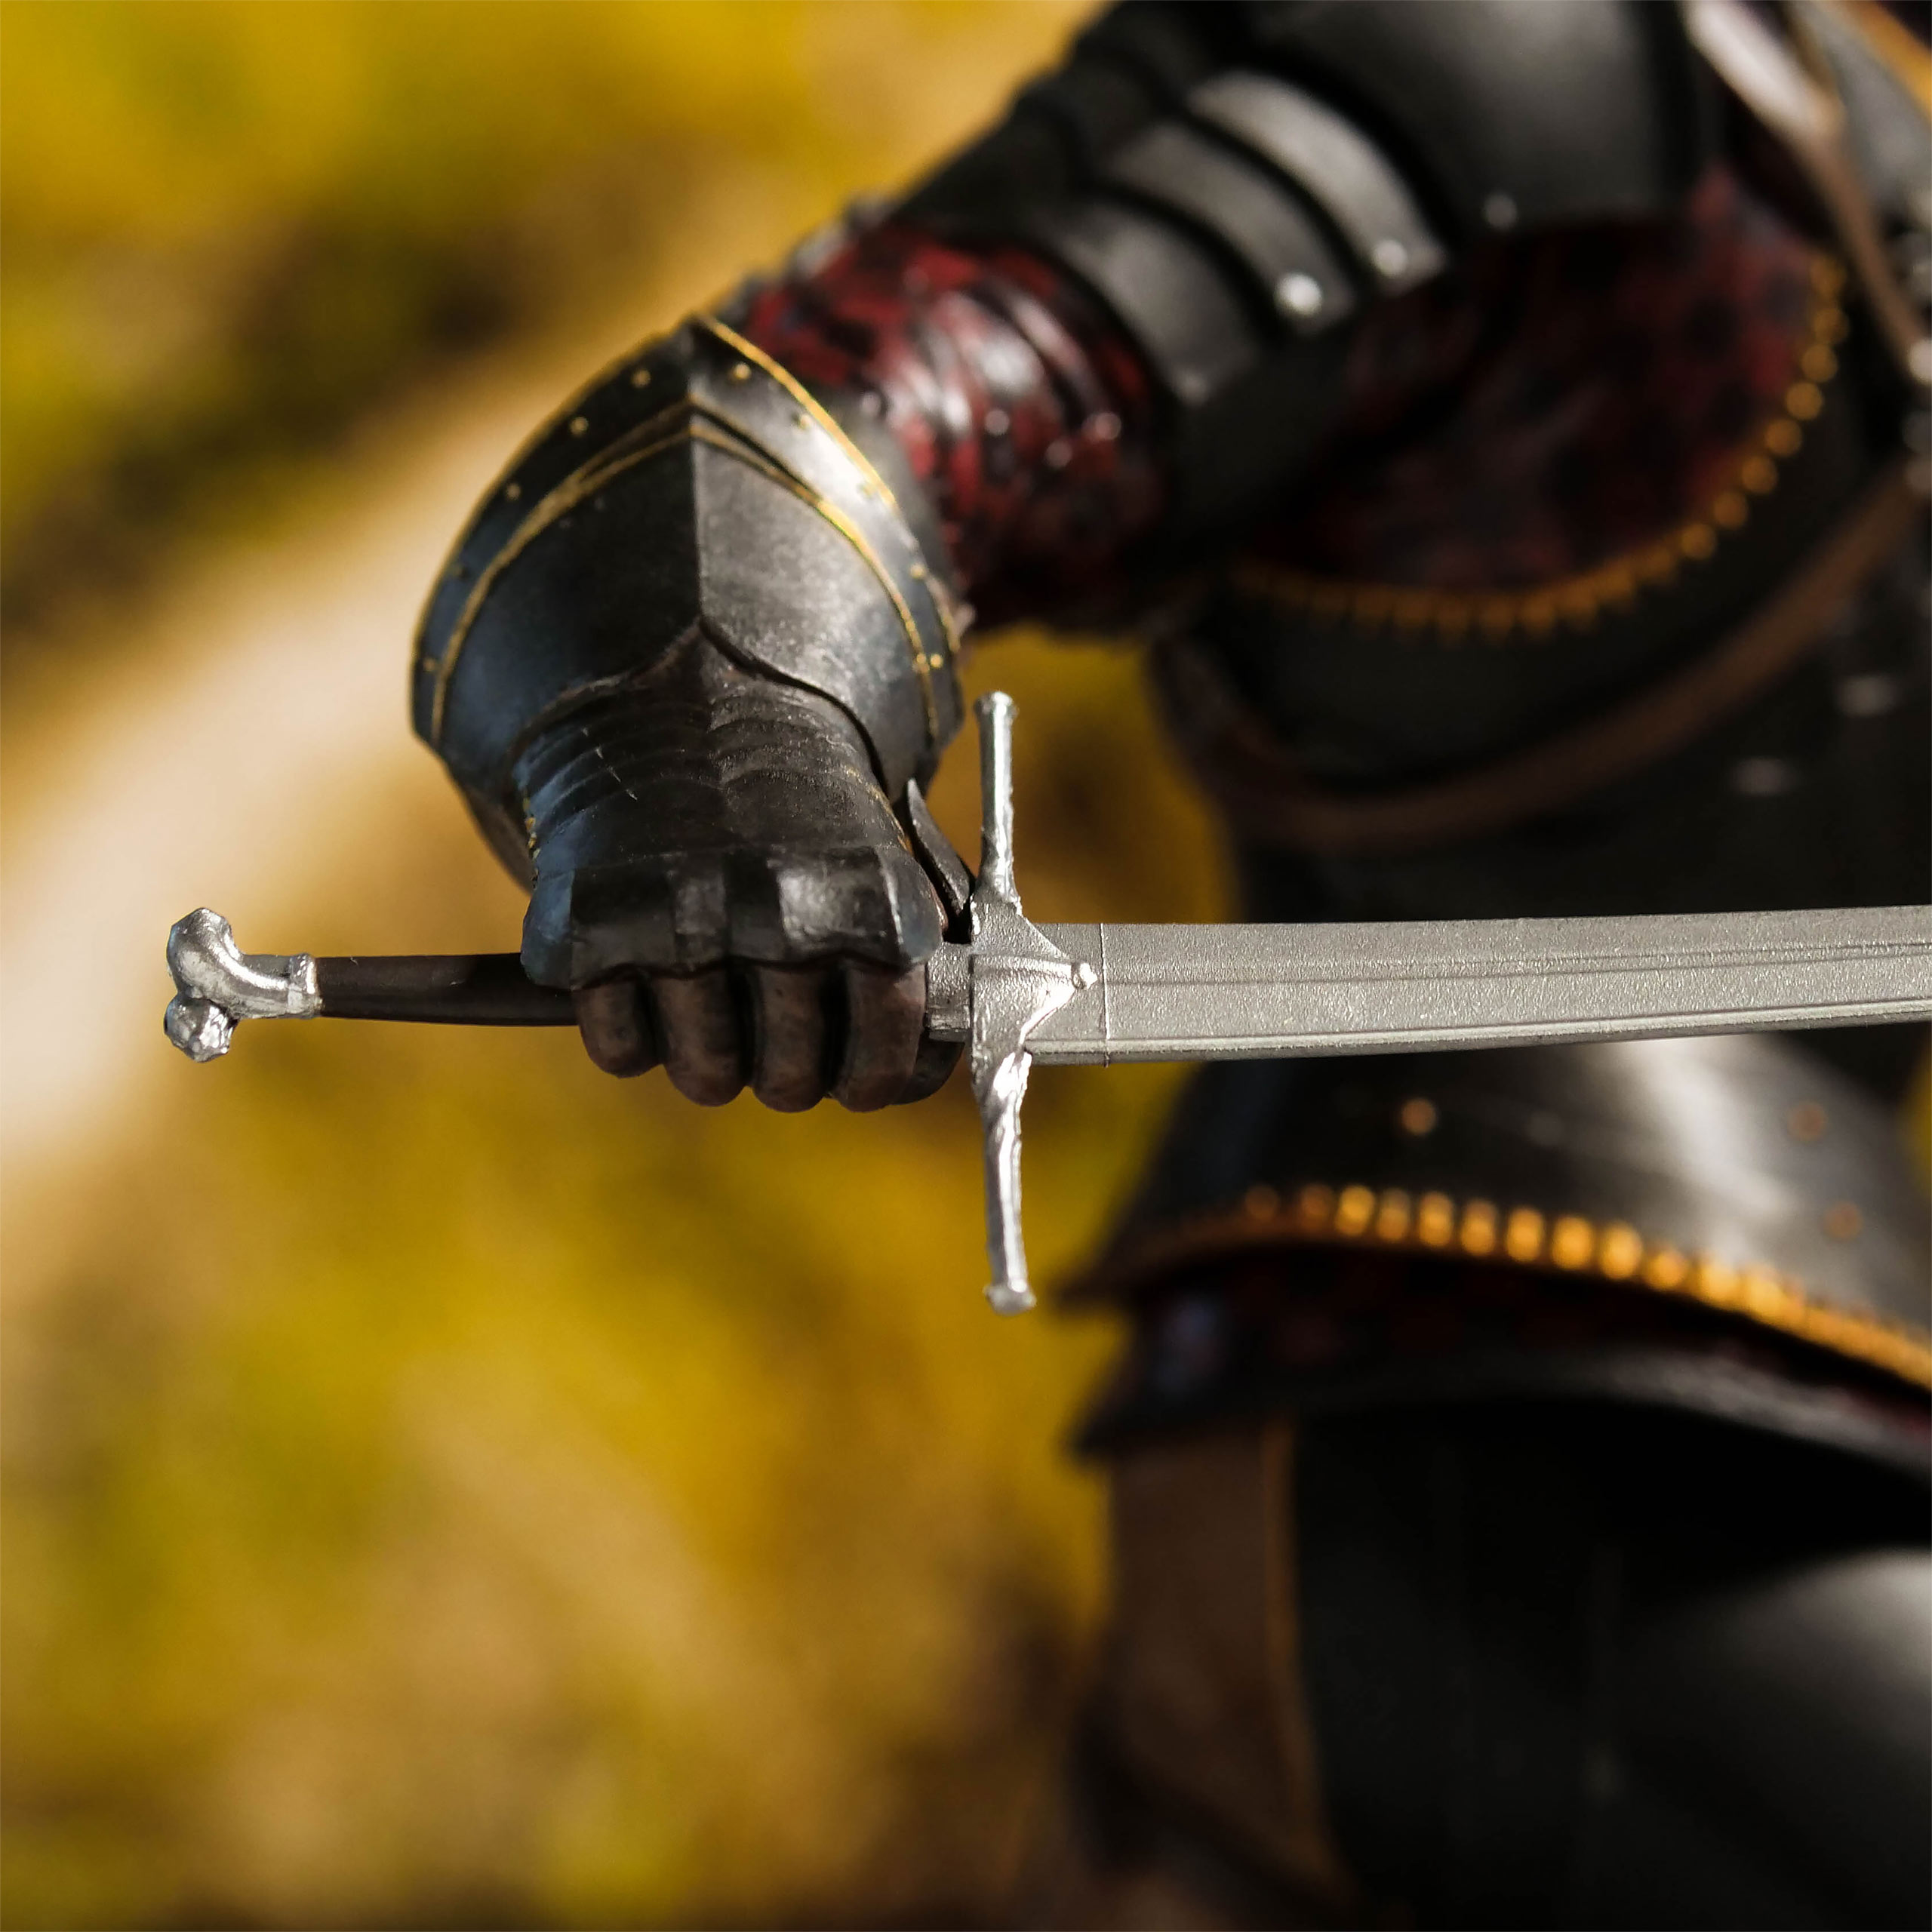 Witcher 3 - Statue de Geralt Toussaint Tourney Armor